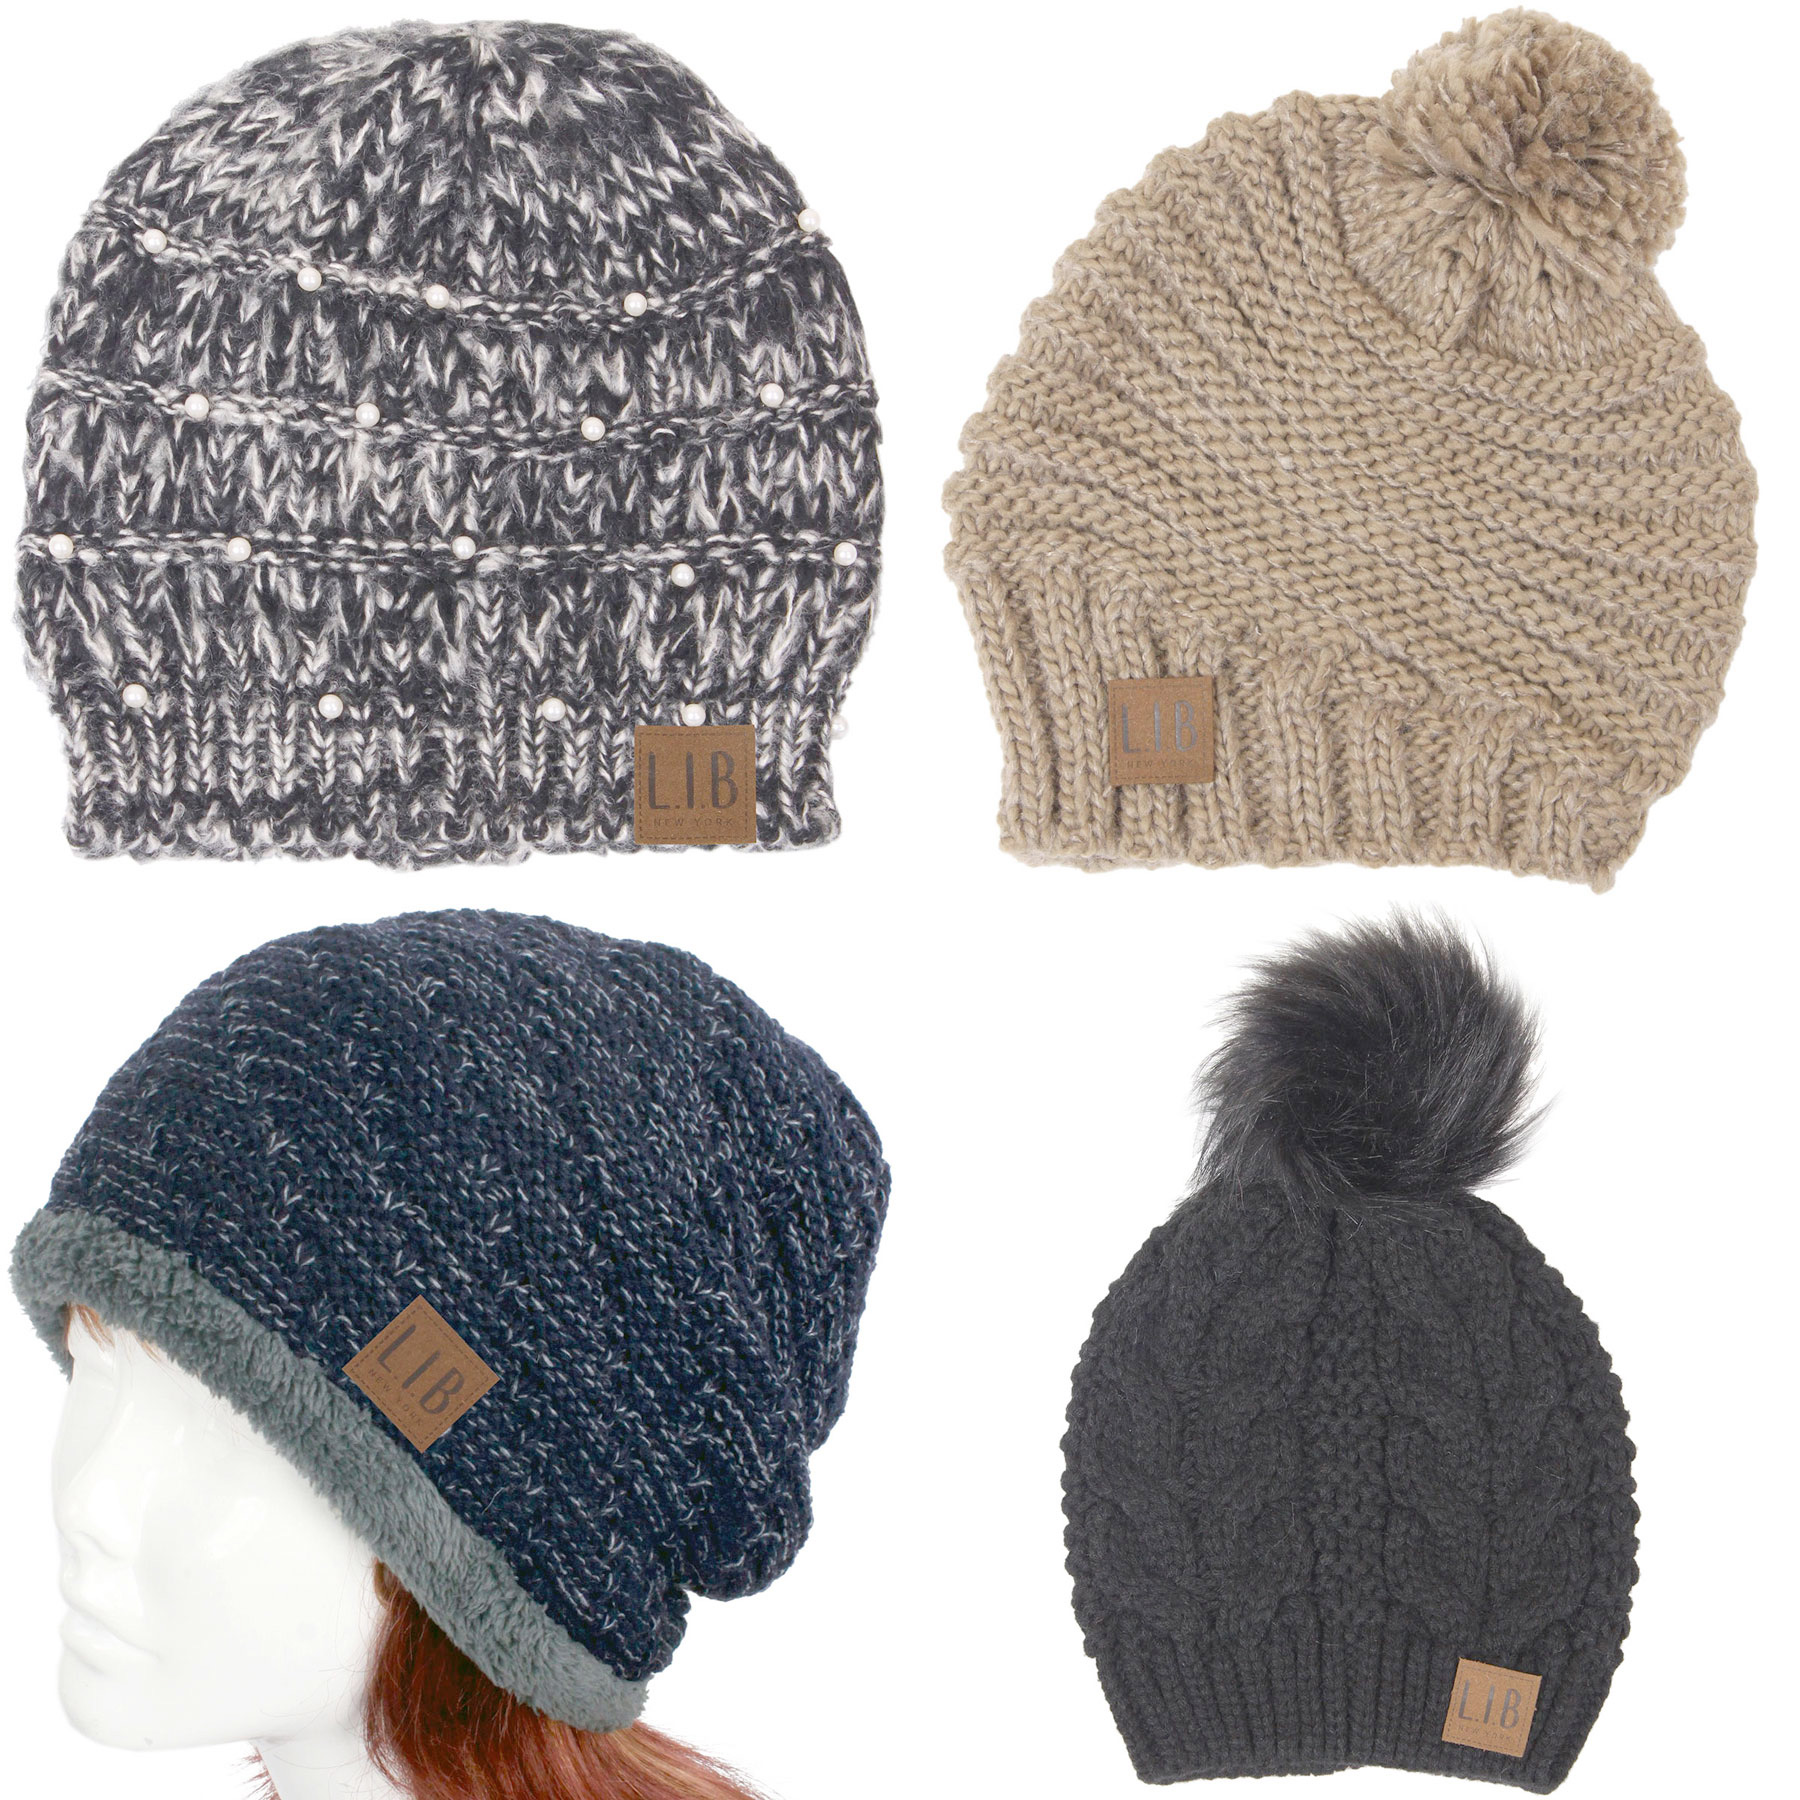 Knit Winter Hats